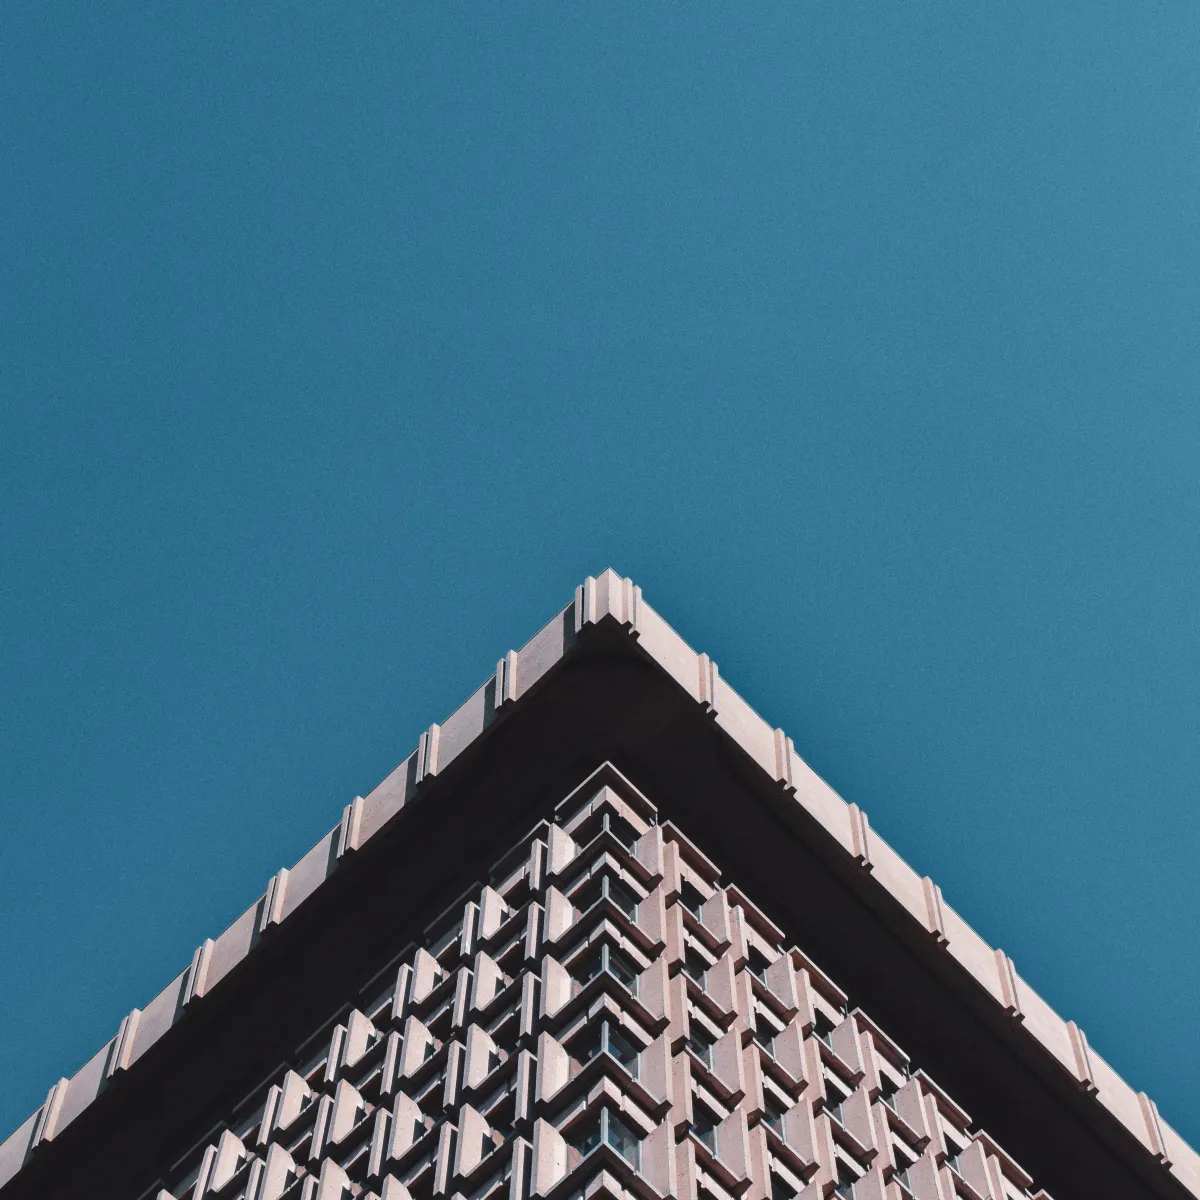 En vue de contre-plongée, un bâtiment d'architecture brutaliste comporte le quart inférieur de l'image, formant une pointe triangulaire, sur fond de ciel bleu immaculé.